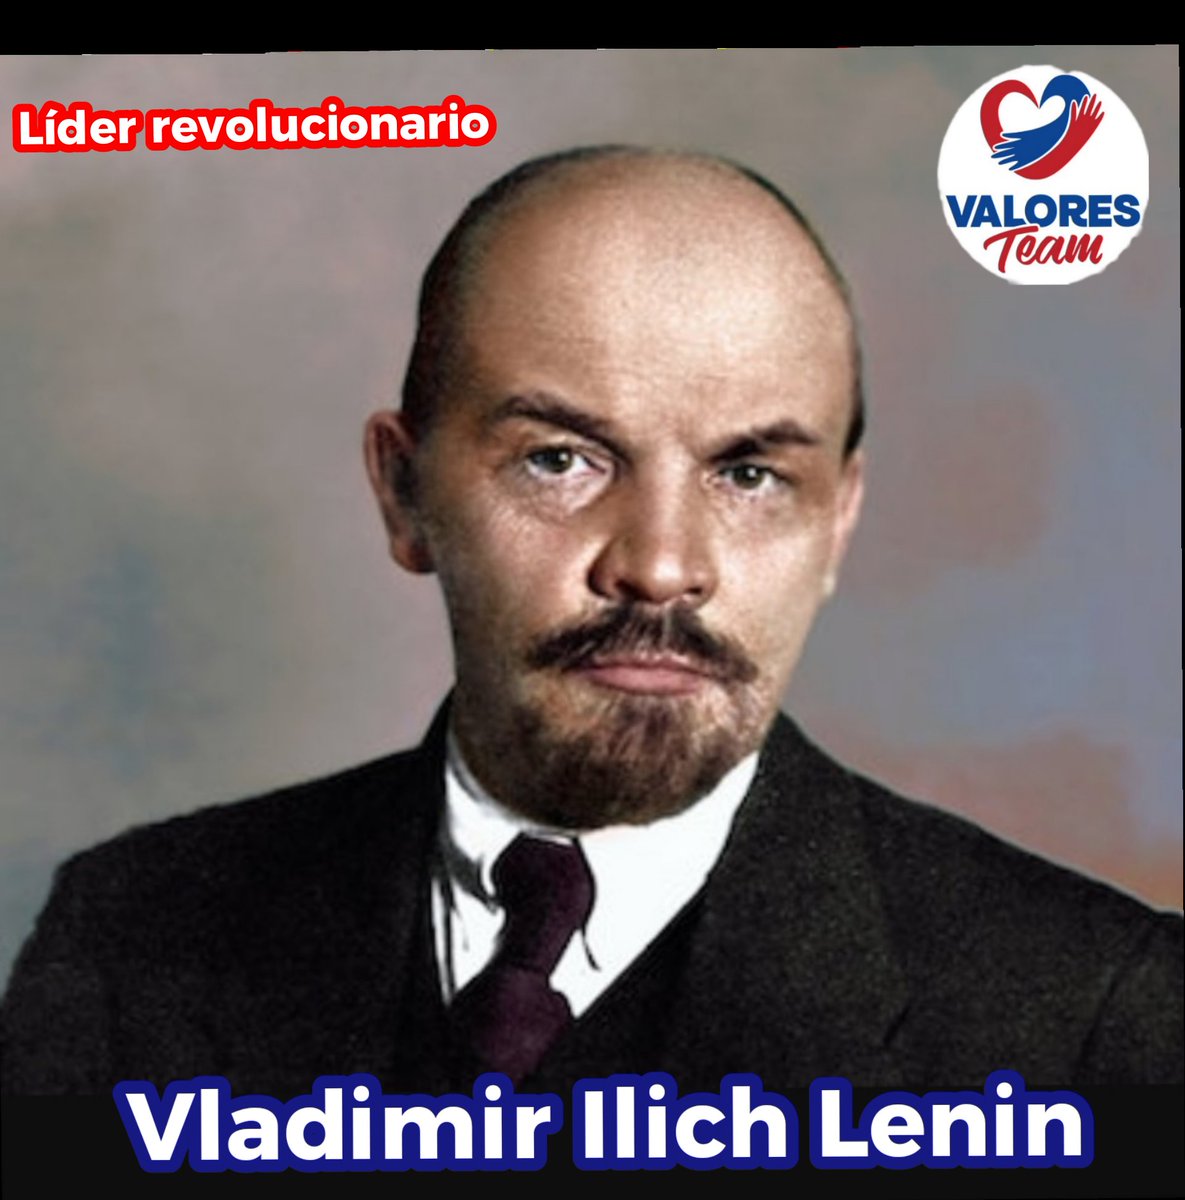 🗣️ #Cuba 🇨🇺 Vladimir Ilich Lenin, fundador del Partido Comunista de la Unión Soviética. 👉 Hombre de pensamiento y de acción, su legado se convirtió en un tesoro para la humanidad, abogaba por la lucha de clases y la abolición del sistema capitalista. #ValoresTeam 🕊️